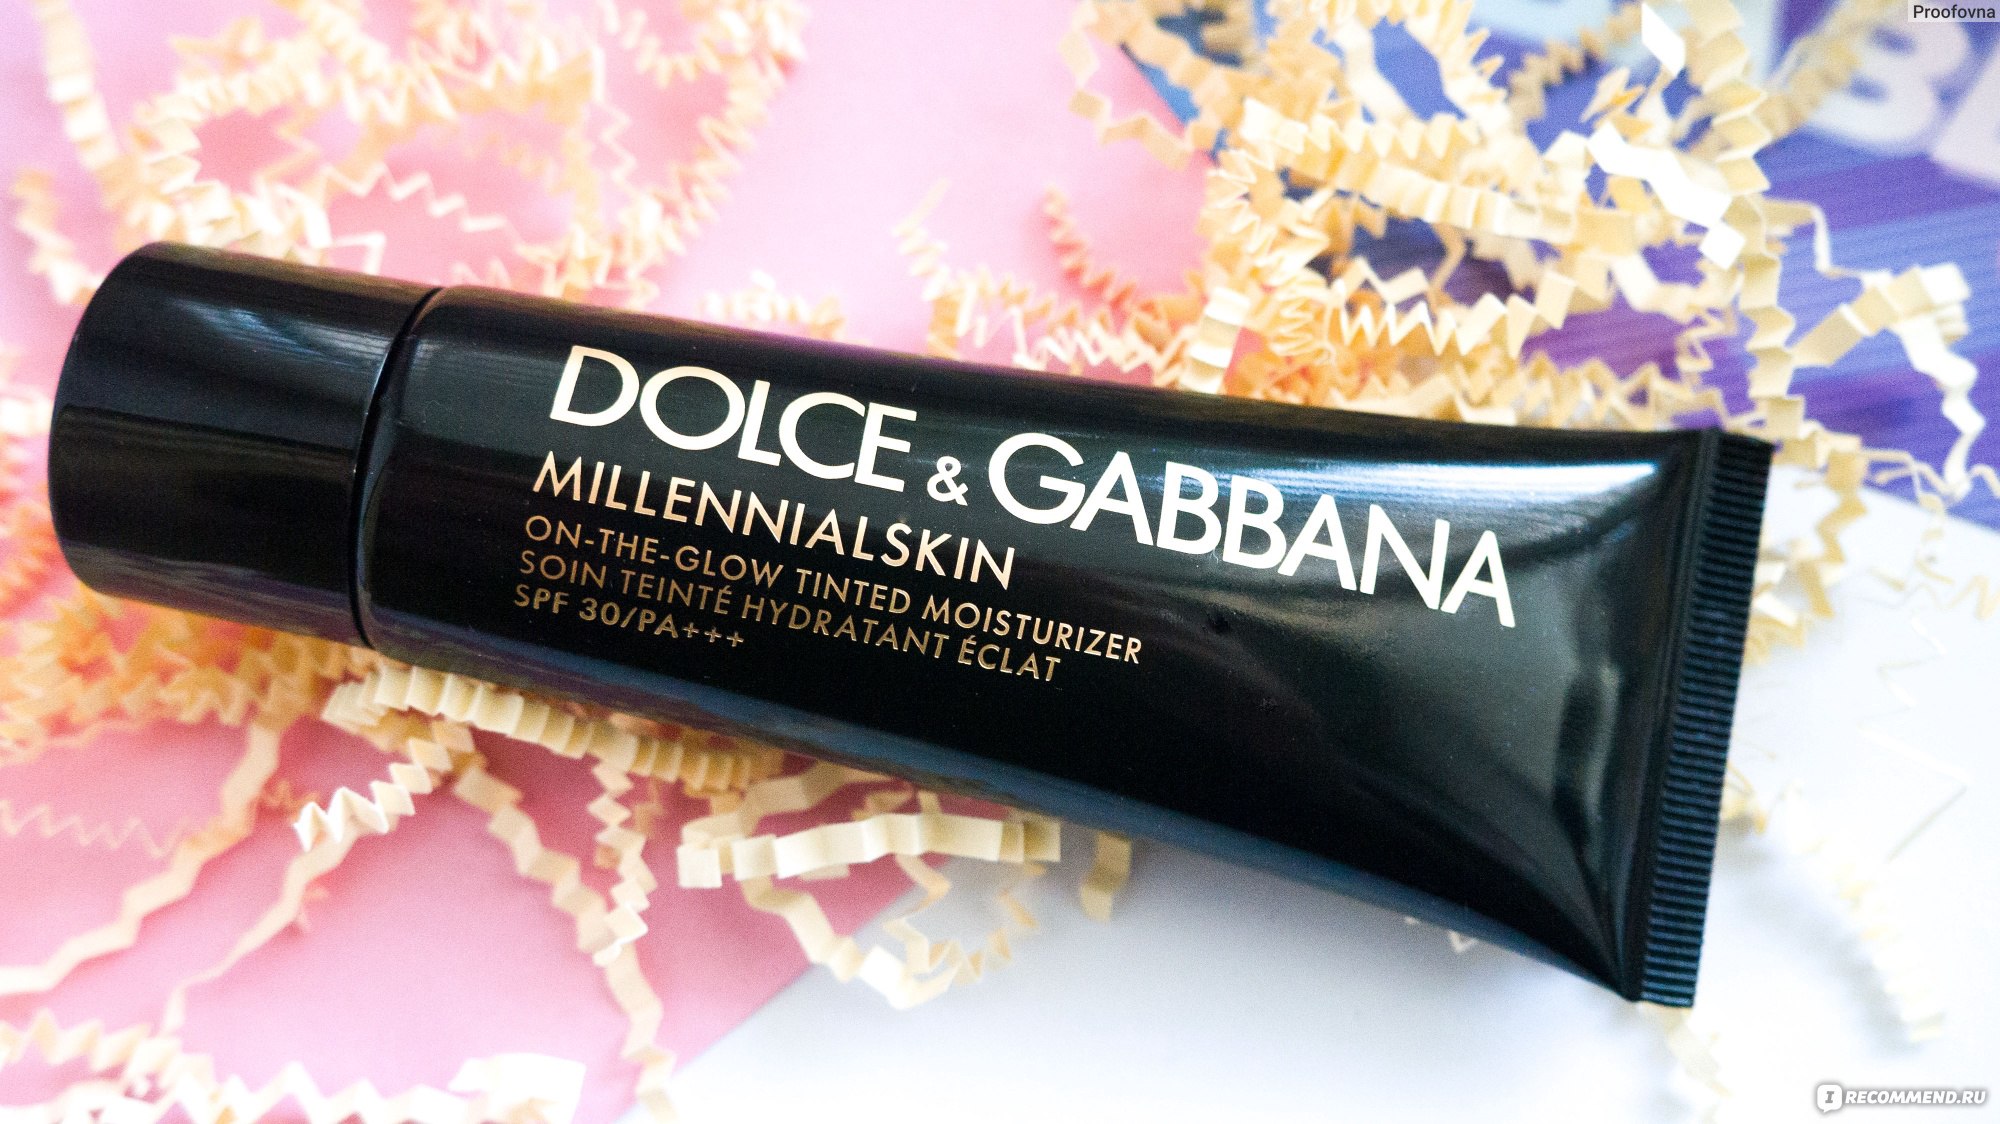 Dolce gabbana millennialskin. Dolce&Gabbana увлажняющее средство с тоном Millennialskin SPF 30. Dolce&Gabbana увлажняющее средство с тоном Millennialskin SPF 30 сколько стоит. Dolce&Gabbana увлажняющее средство с тоном Millennialskin 310 отзывы.